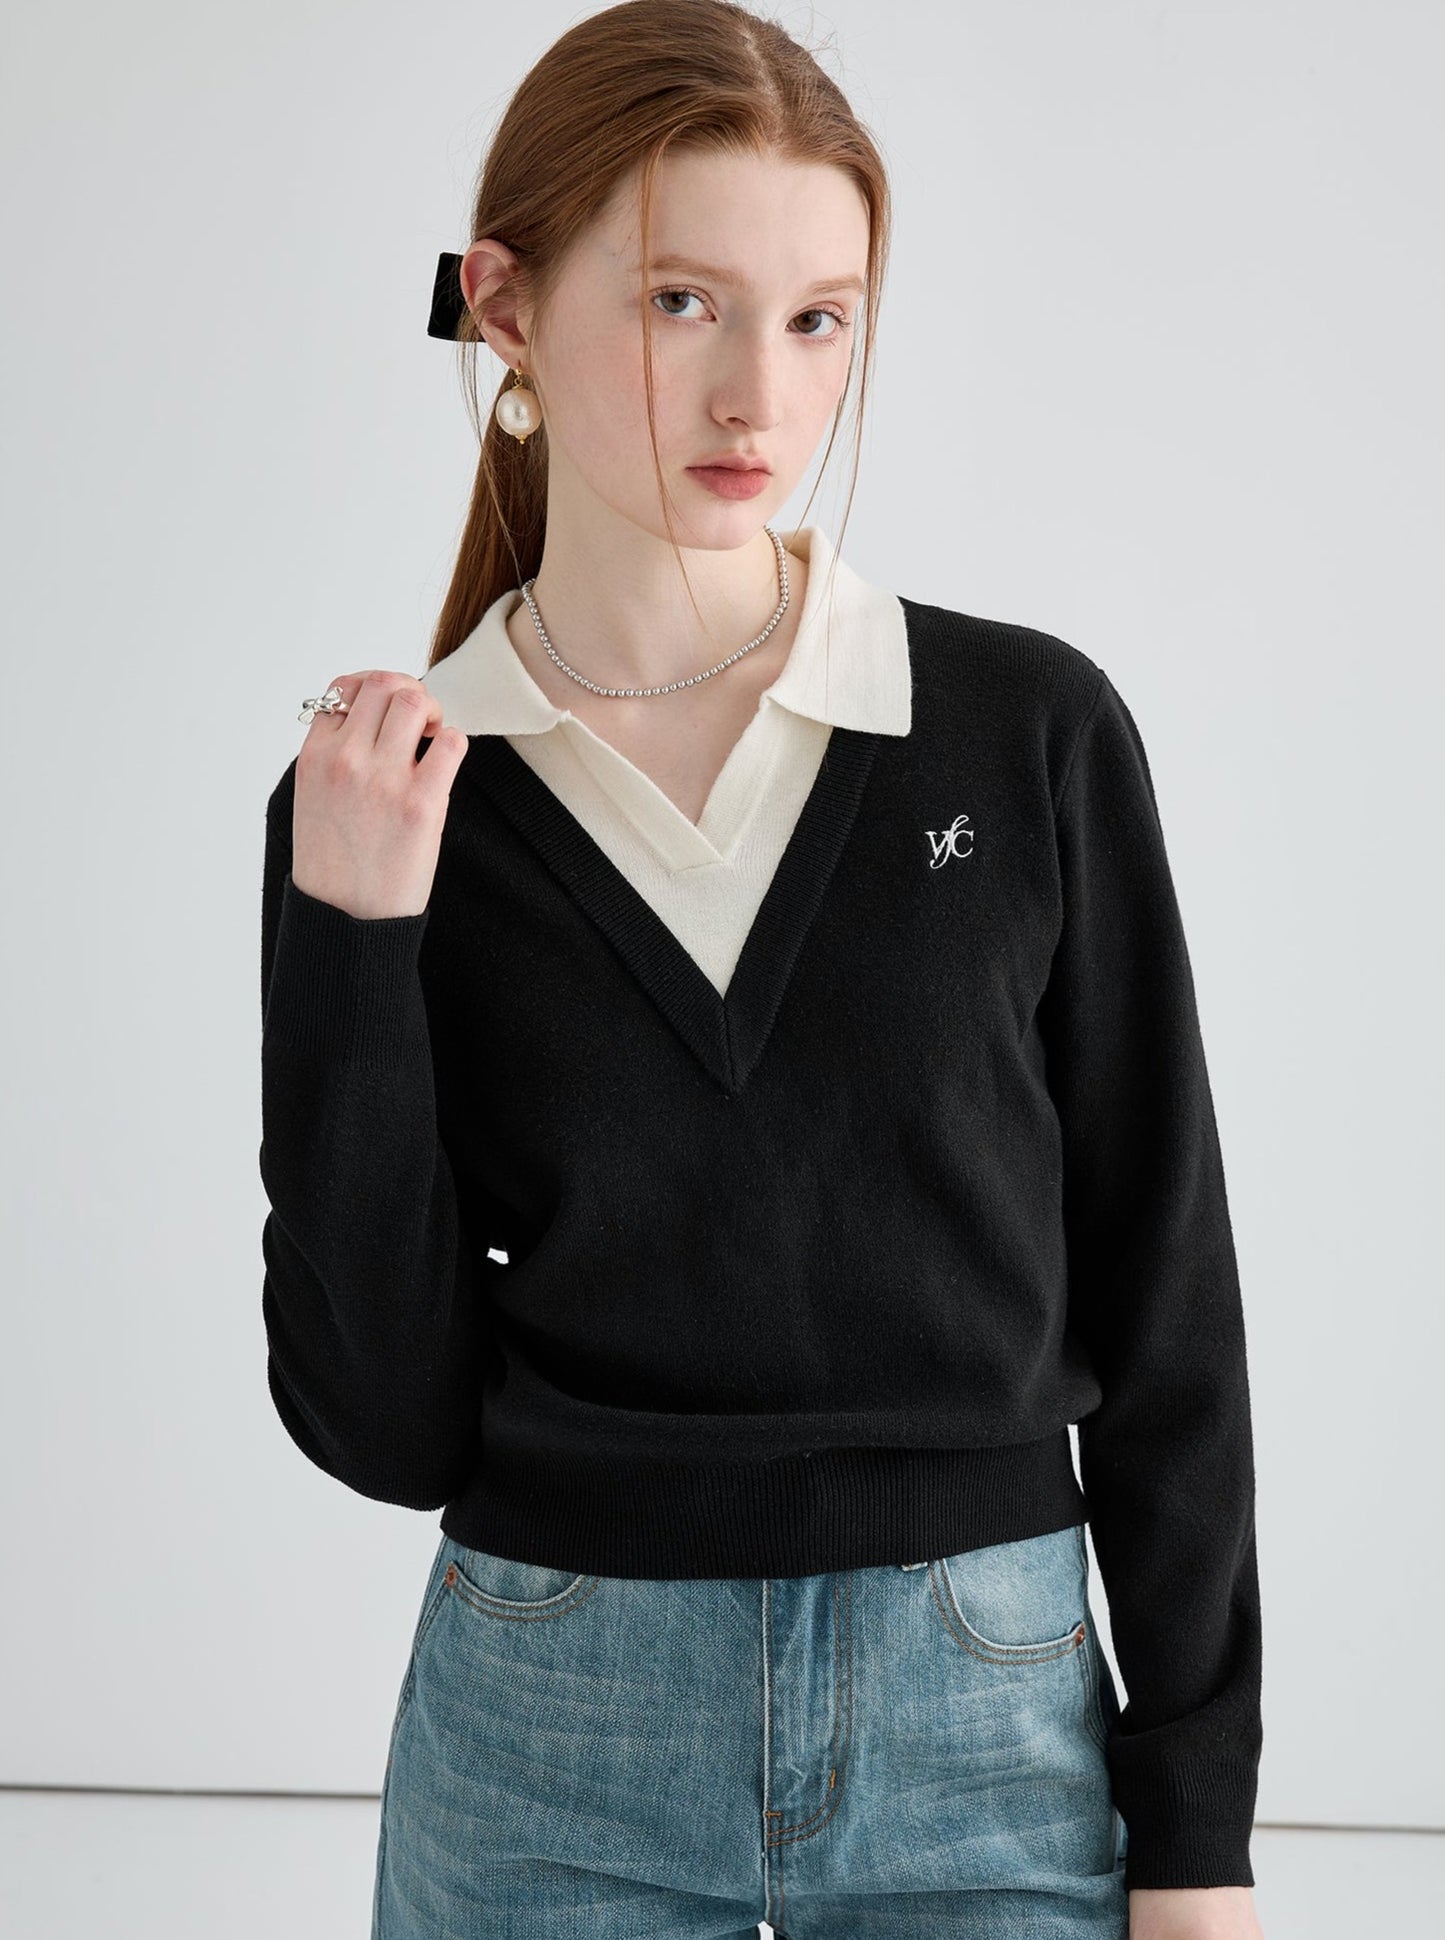 Polo collar pattern wool knitwear tops